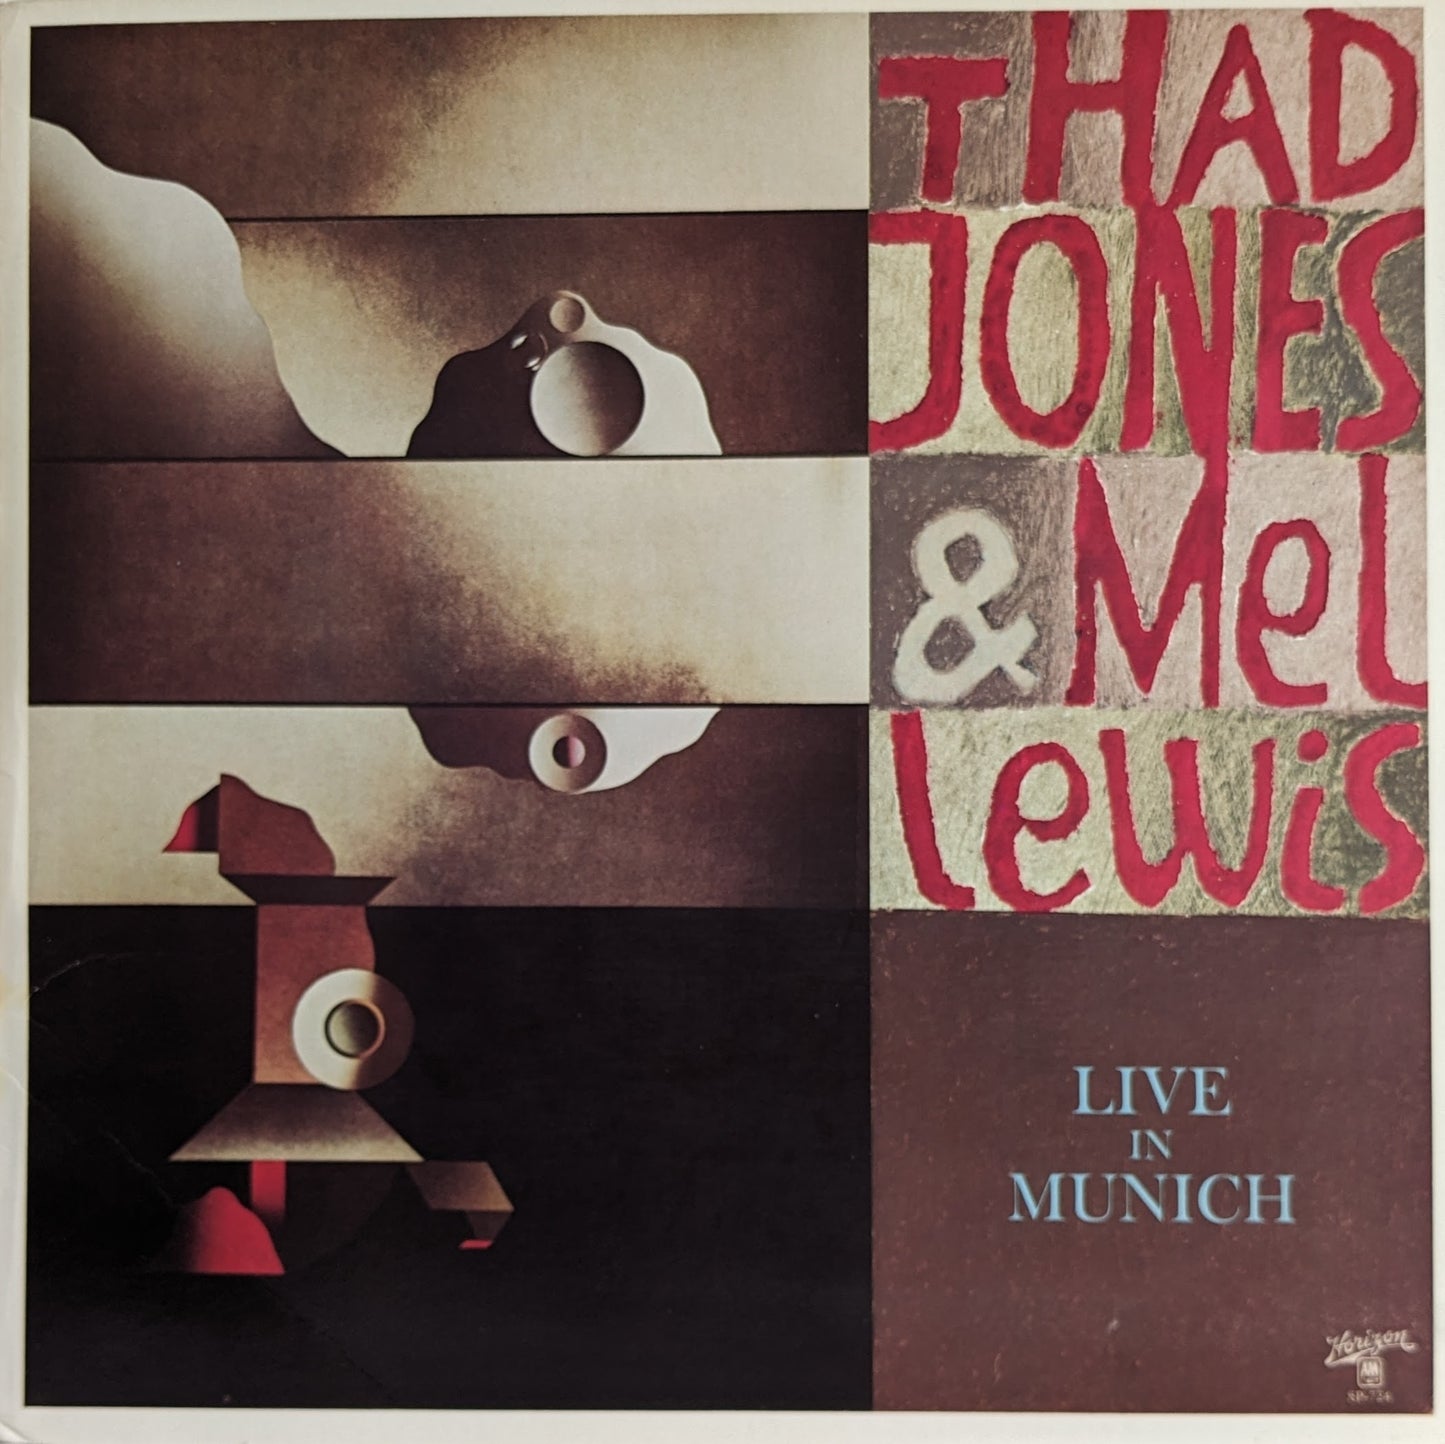 Thad Jones & Mel Lewis - Live In Munich